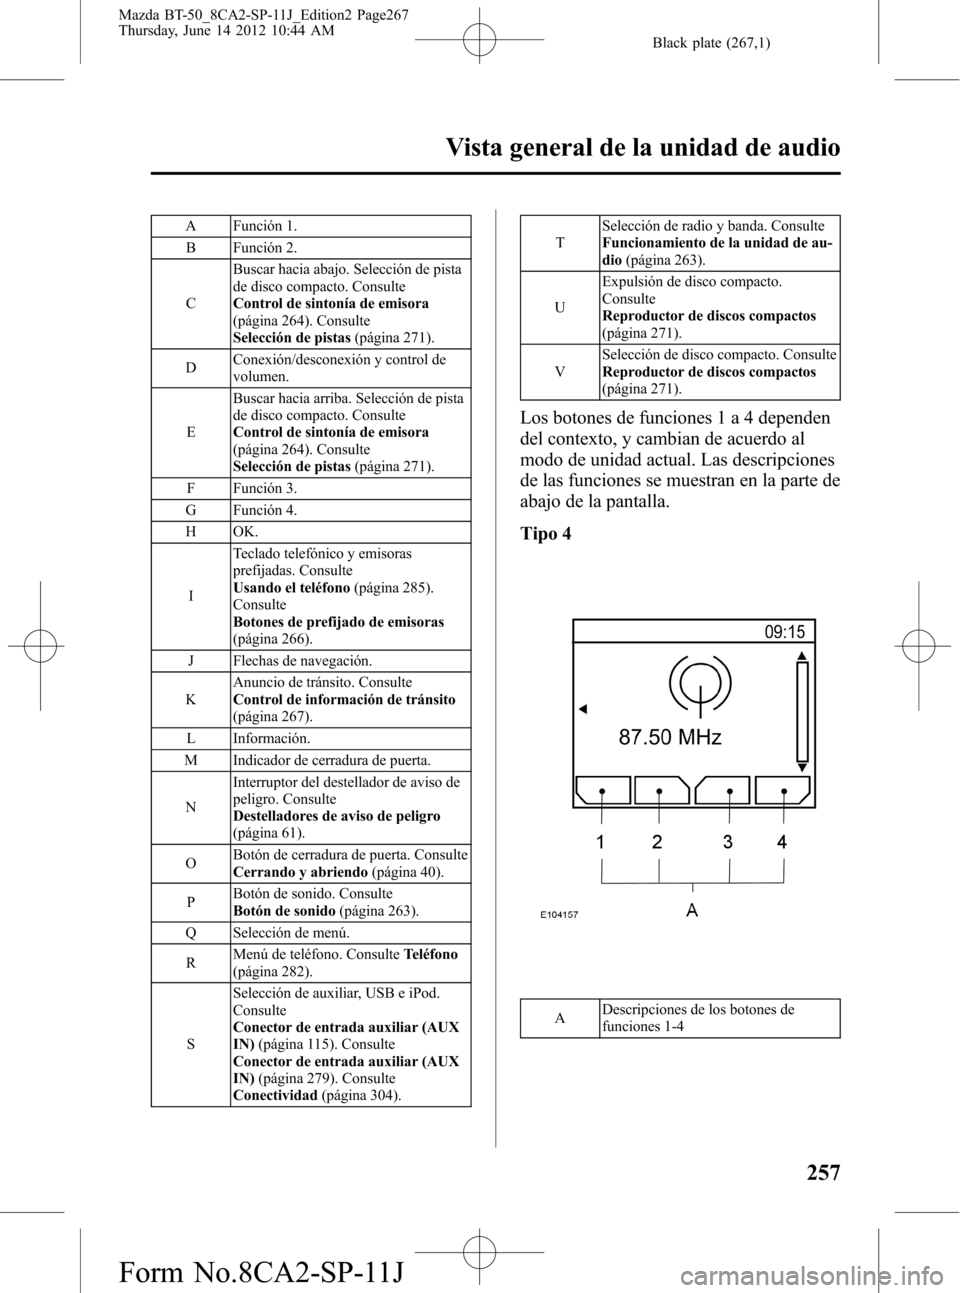 MAZDA MODEL BT-50 2014  Manual del propietario (in Spanish) Black plate (267,1)
A Función 1.
B Función 2.
CBuscar hacia abajo. Selección de pista
de disco compacto. Consulte
Control de sintonía de emisora
(página 264). Consulte
Selección de pistas(págin